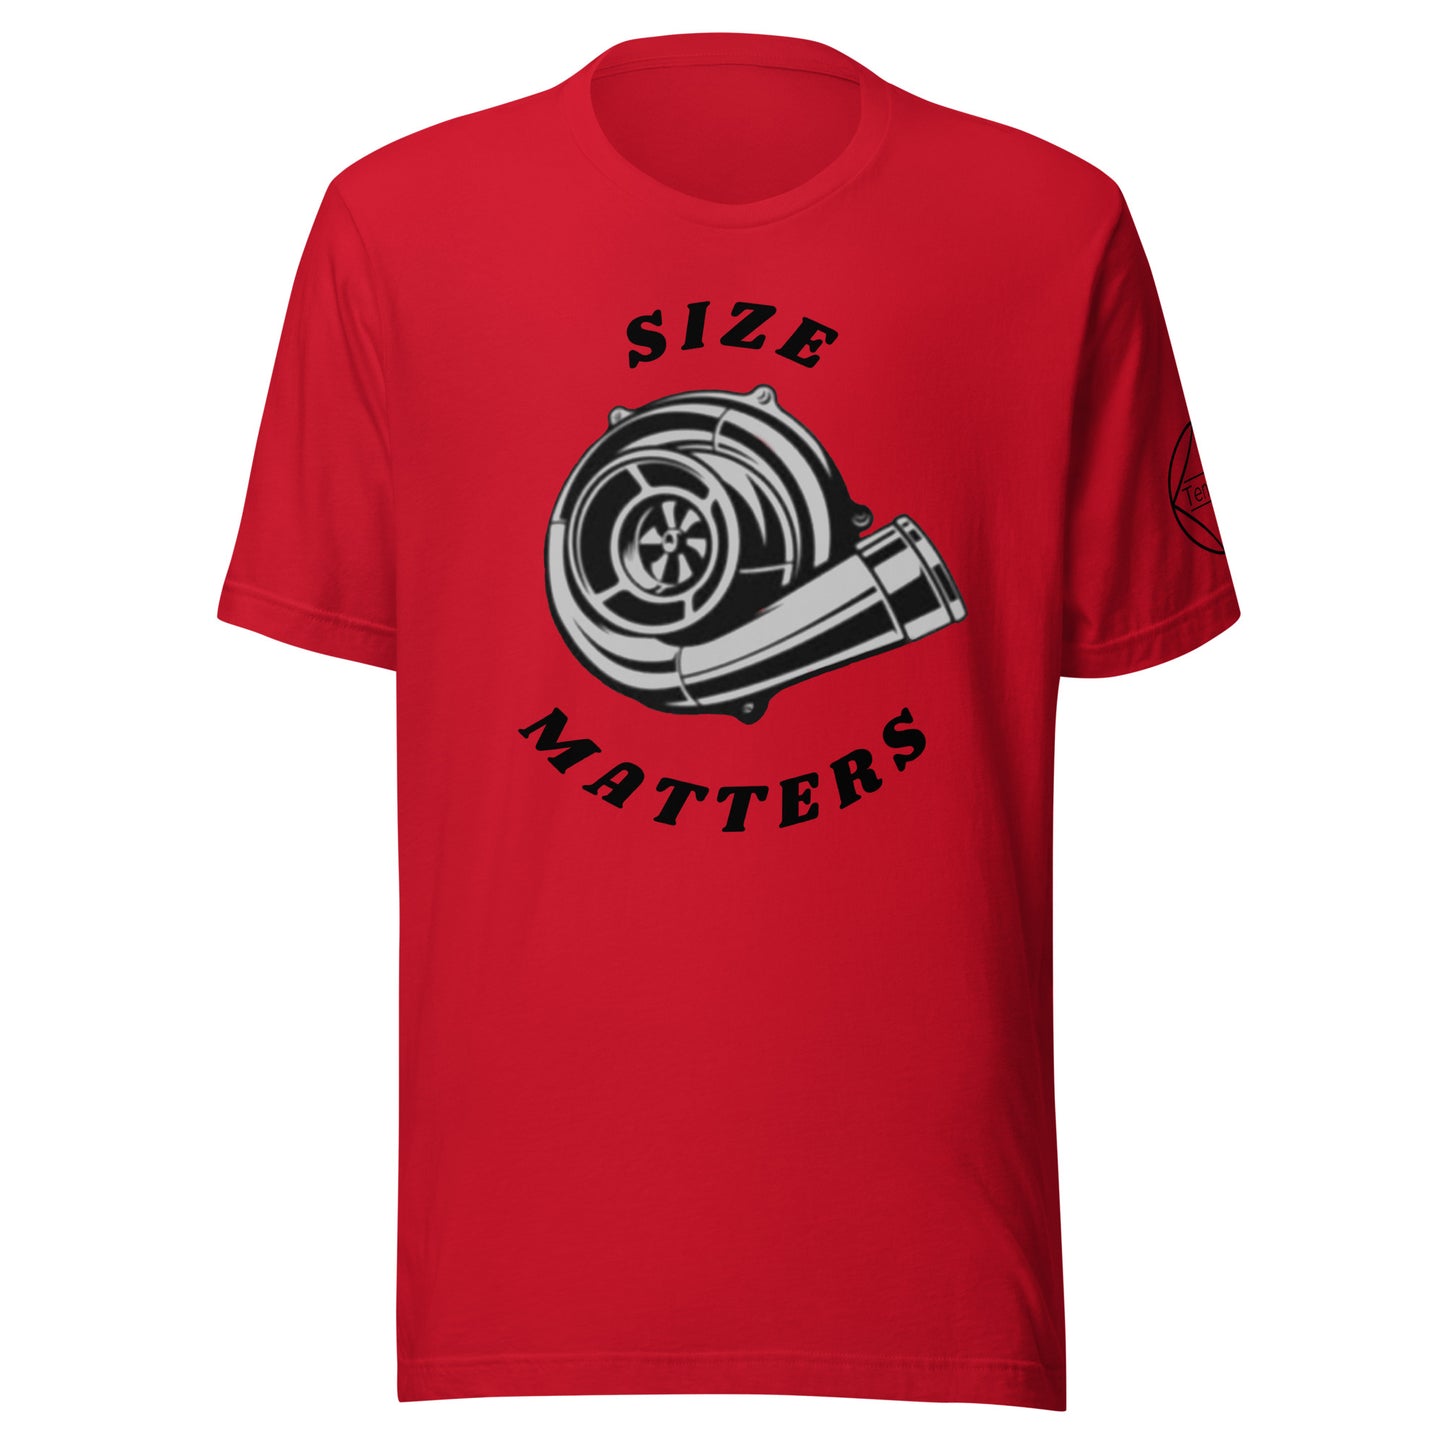 Size Matters t-shirt